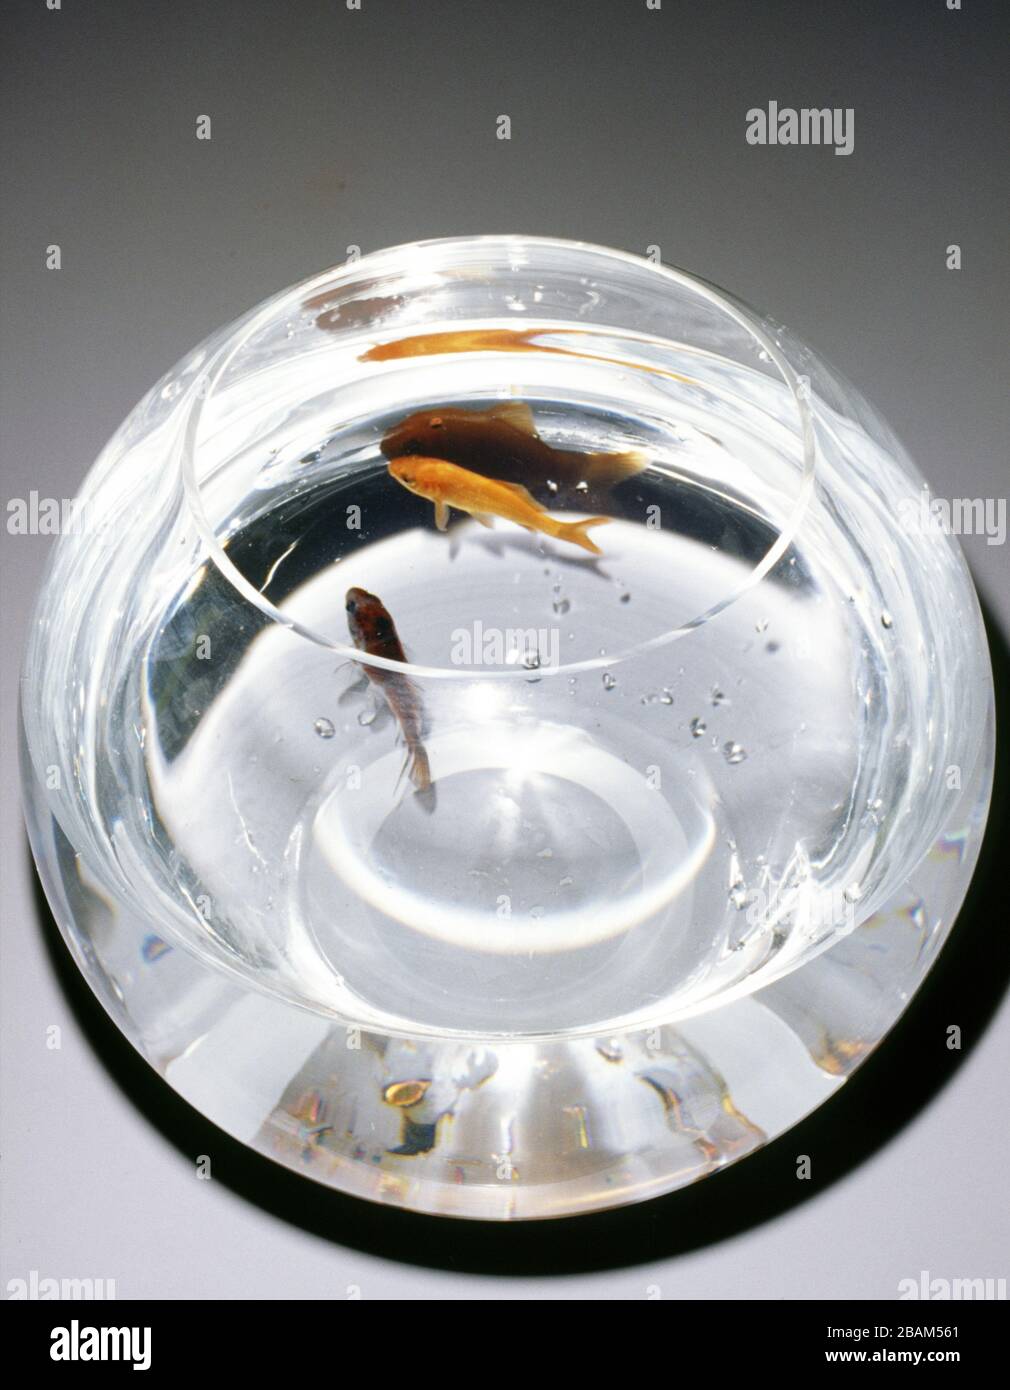 Goldfish bowl Stock Photo